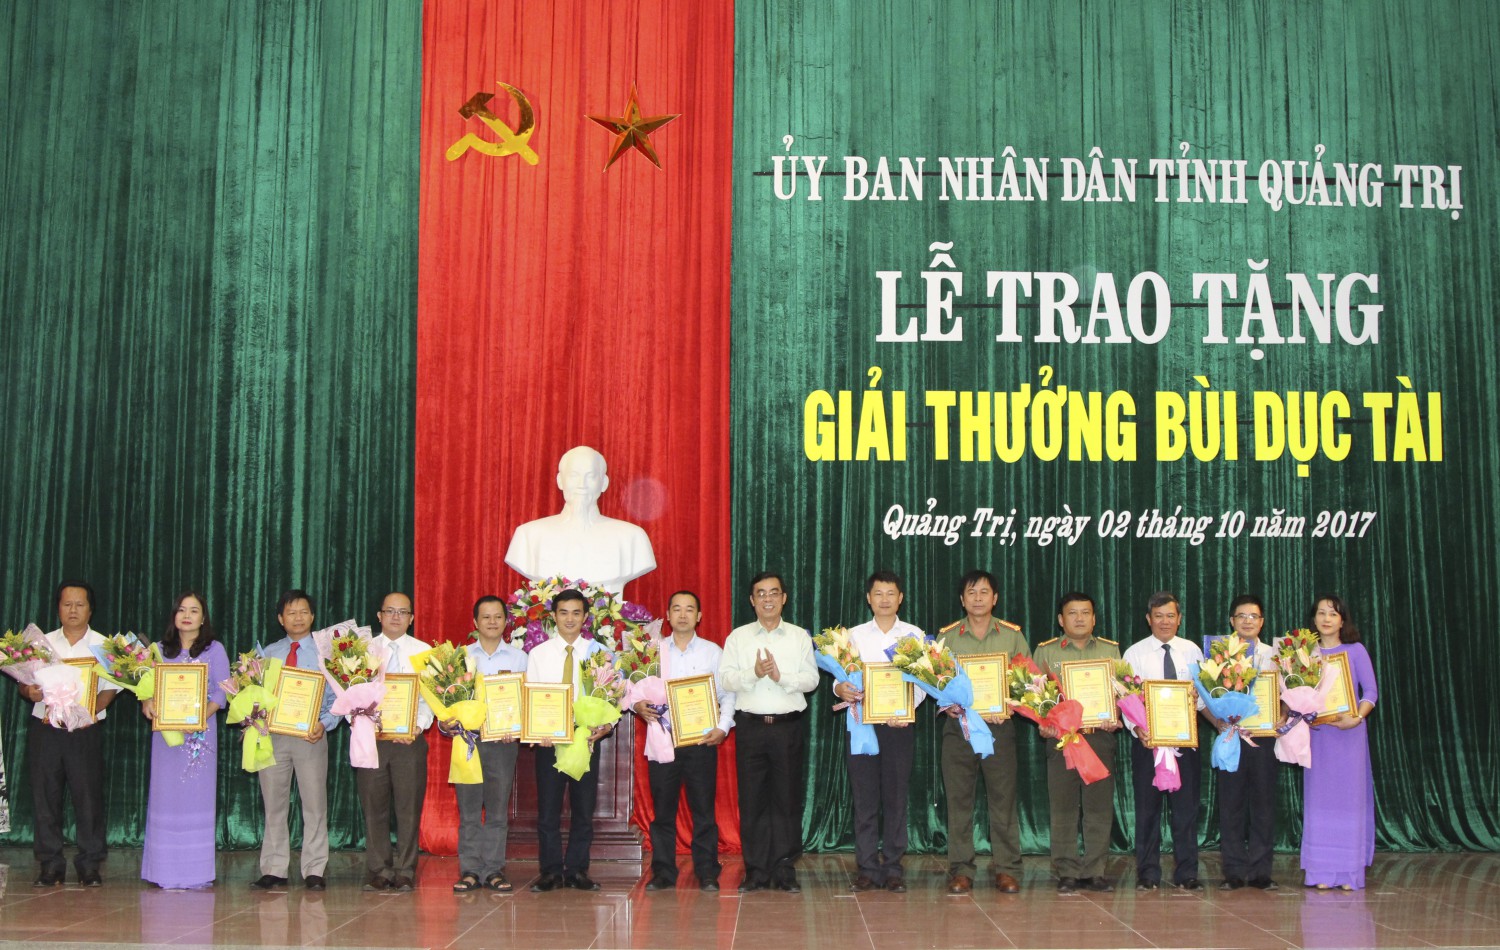 Đồng chí Nguyễn Đức Chính, Chủ tịch UBND tỉnh trao giải thưởng Bùi Dục Tài cho các cá nhân đạt thành tích xuất sắc. Ảnh: Thành Dũng